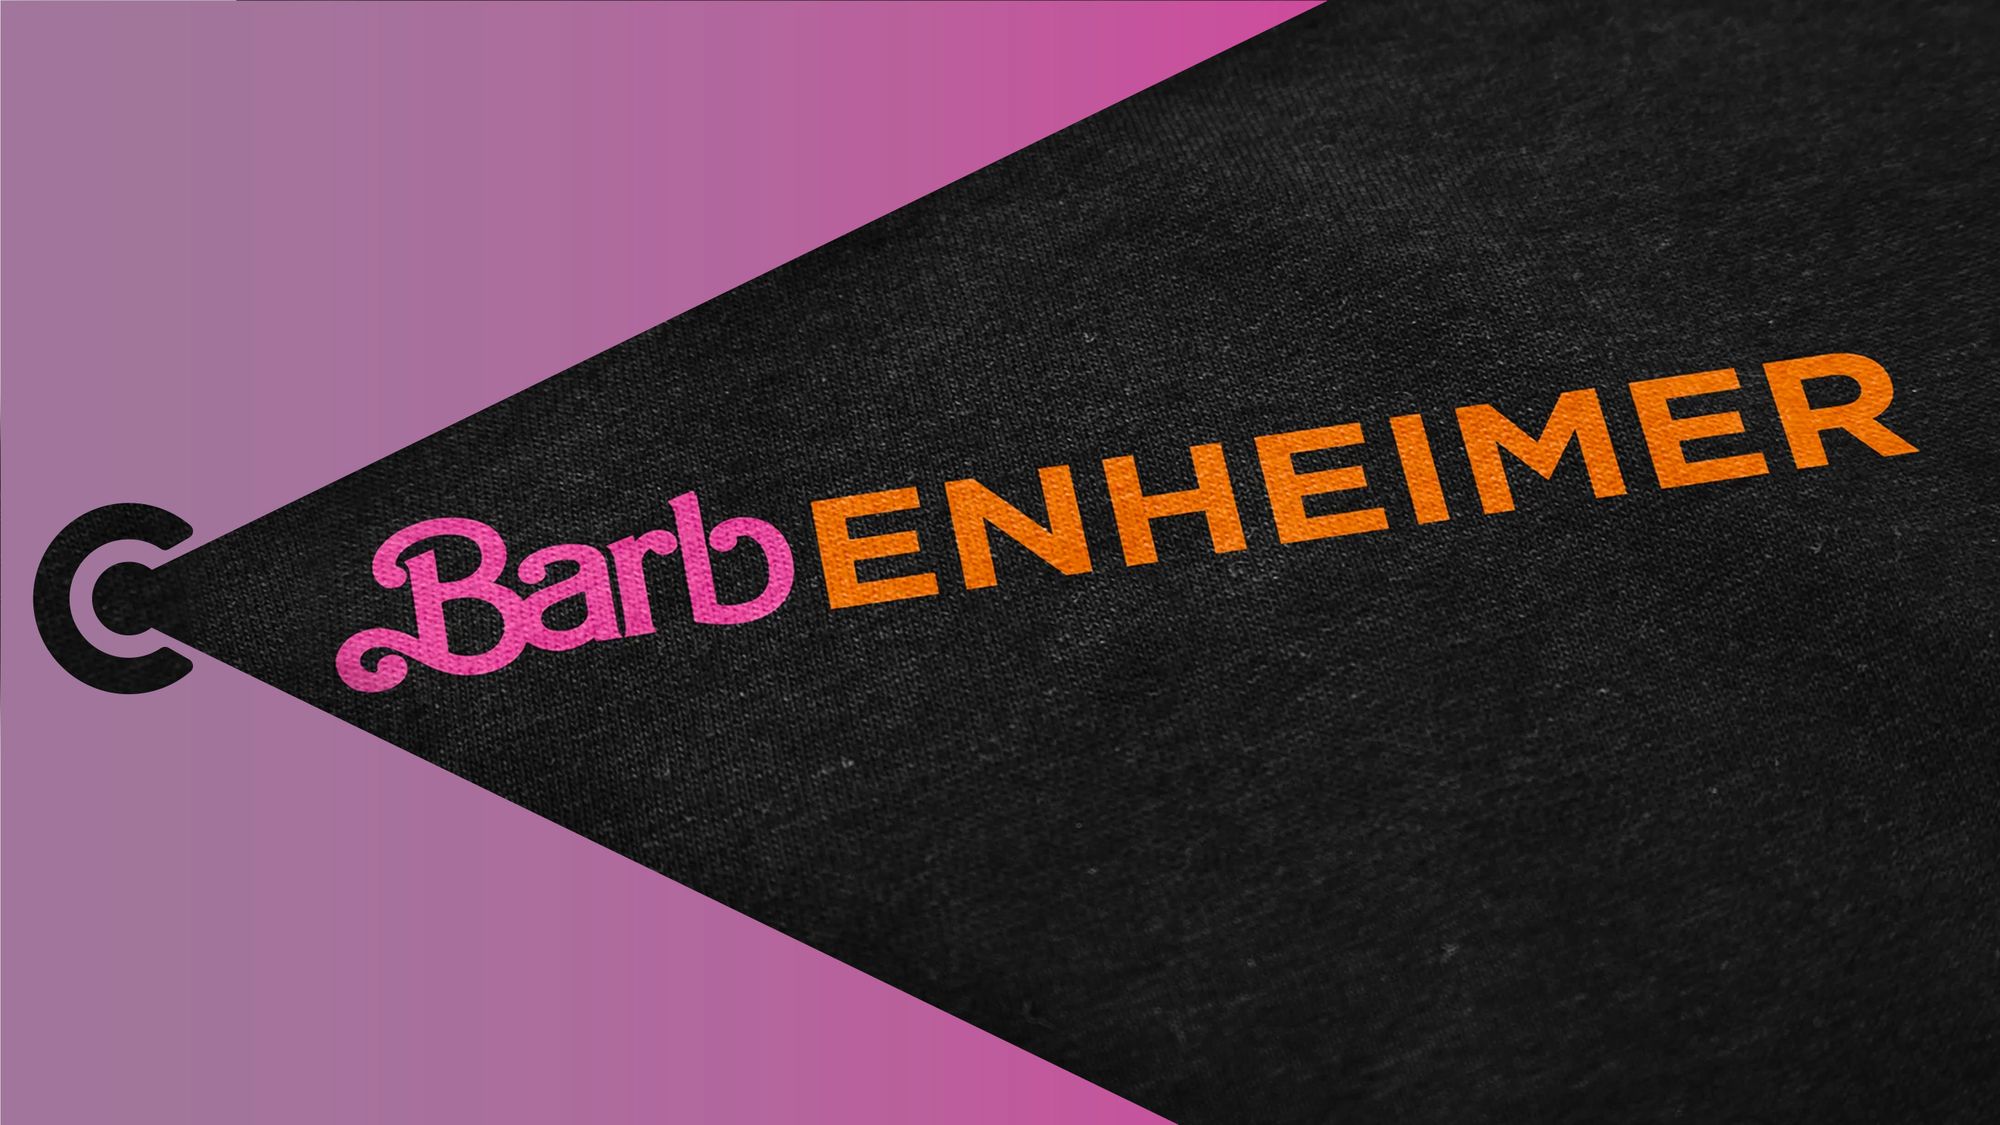 #1: Barbenheimer